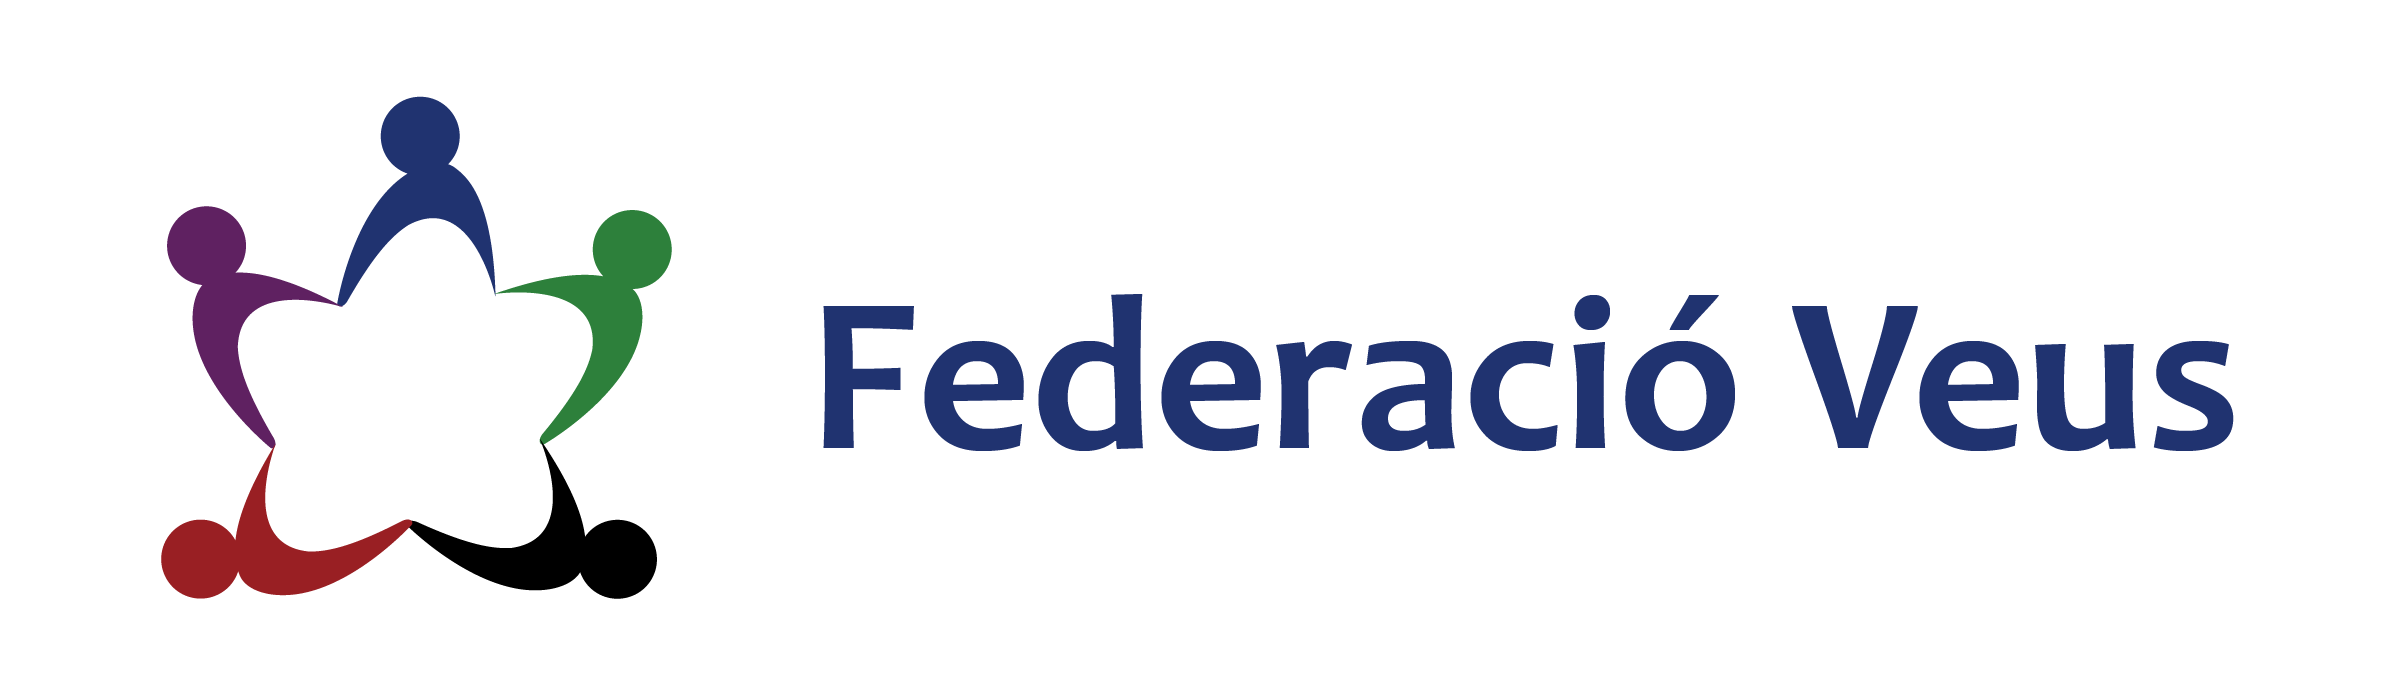 Logotipo Federacio Veus